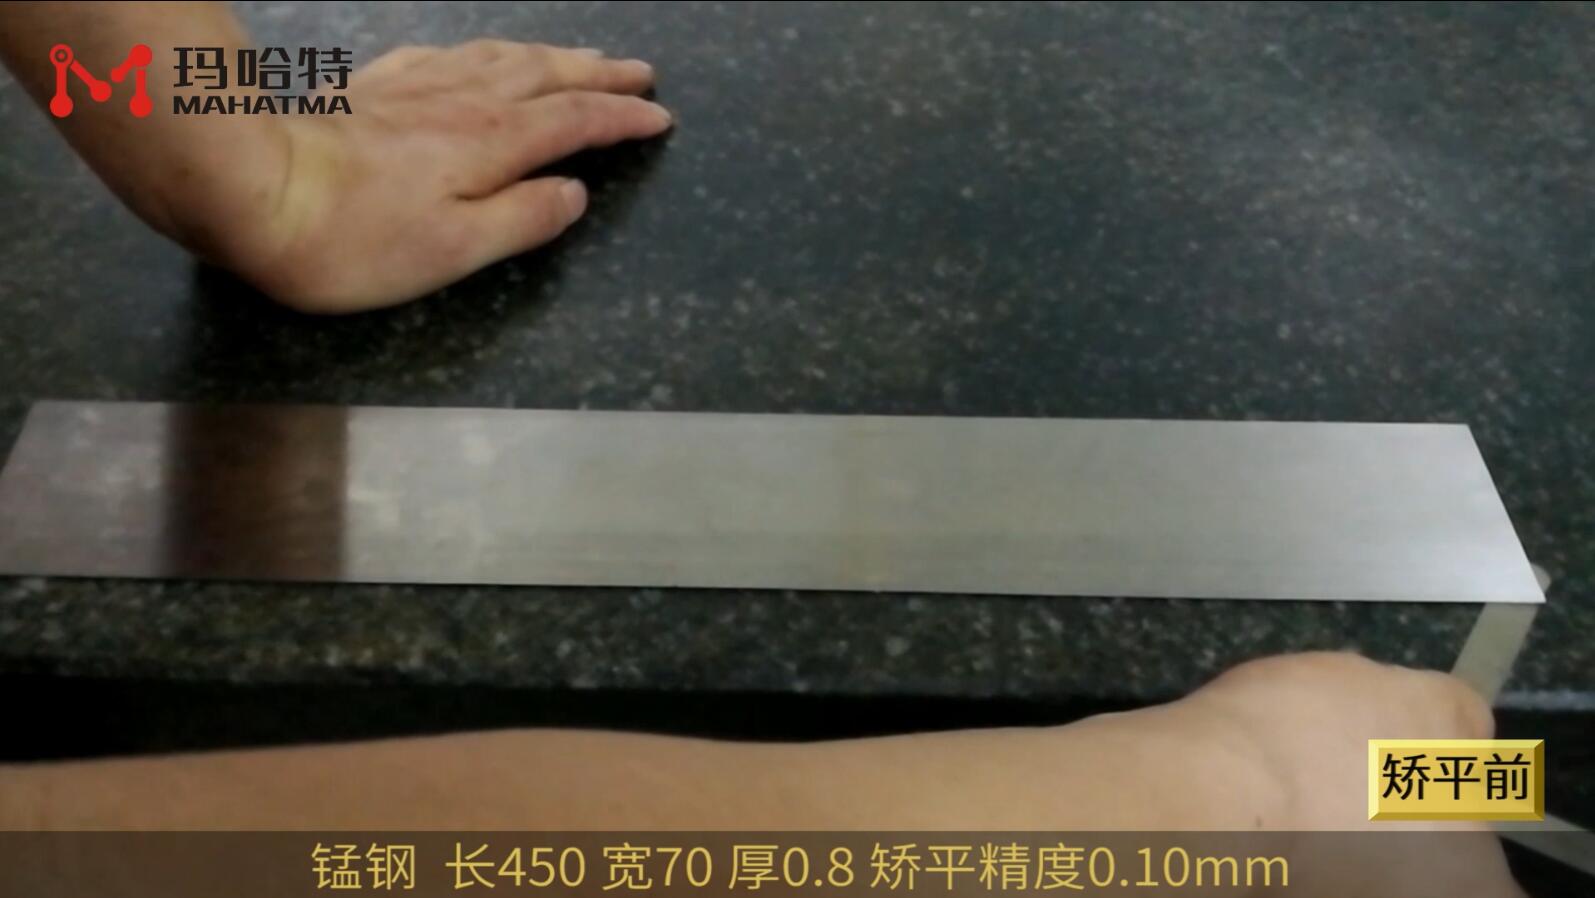 钢 MHT22 长方形 长450宽70厚0.8mm